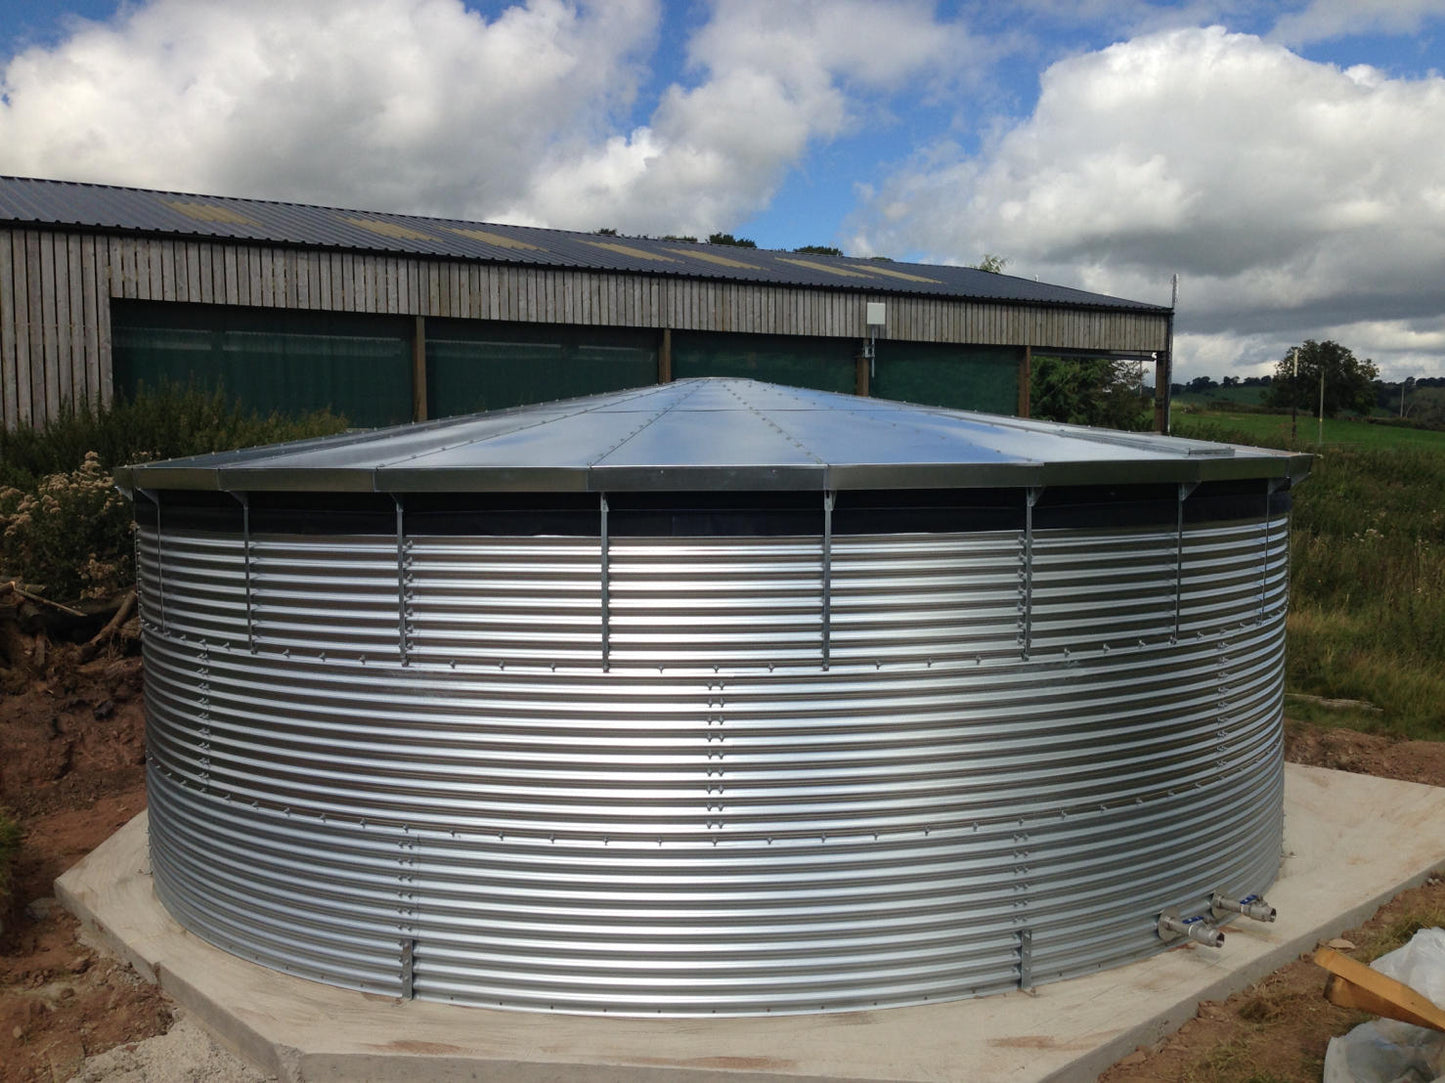 18,000 litre Galvanised Steel Water Tank